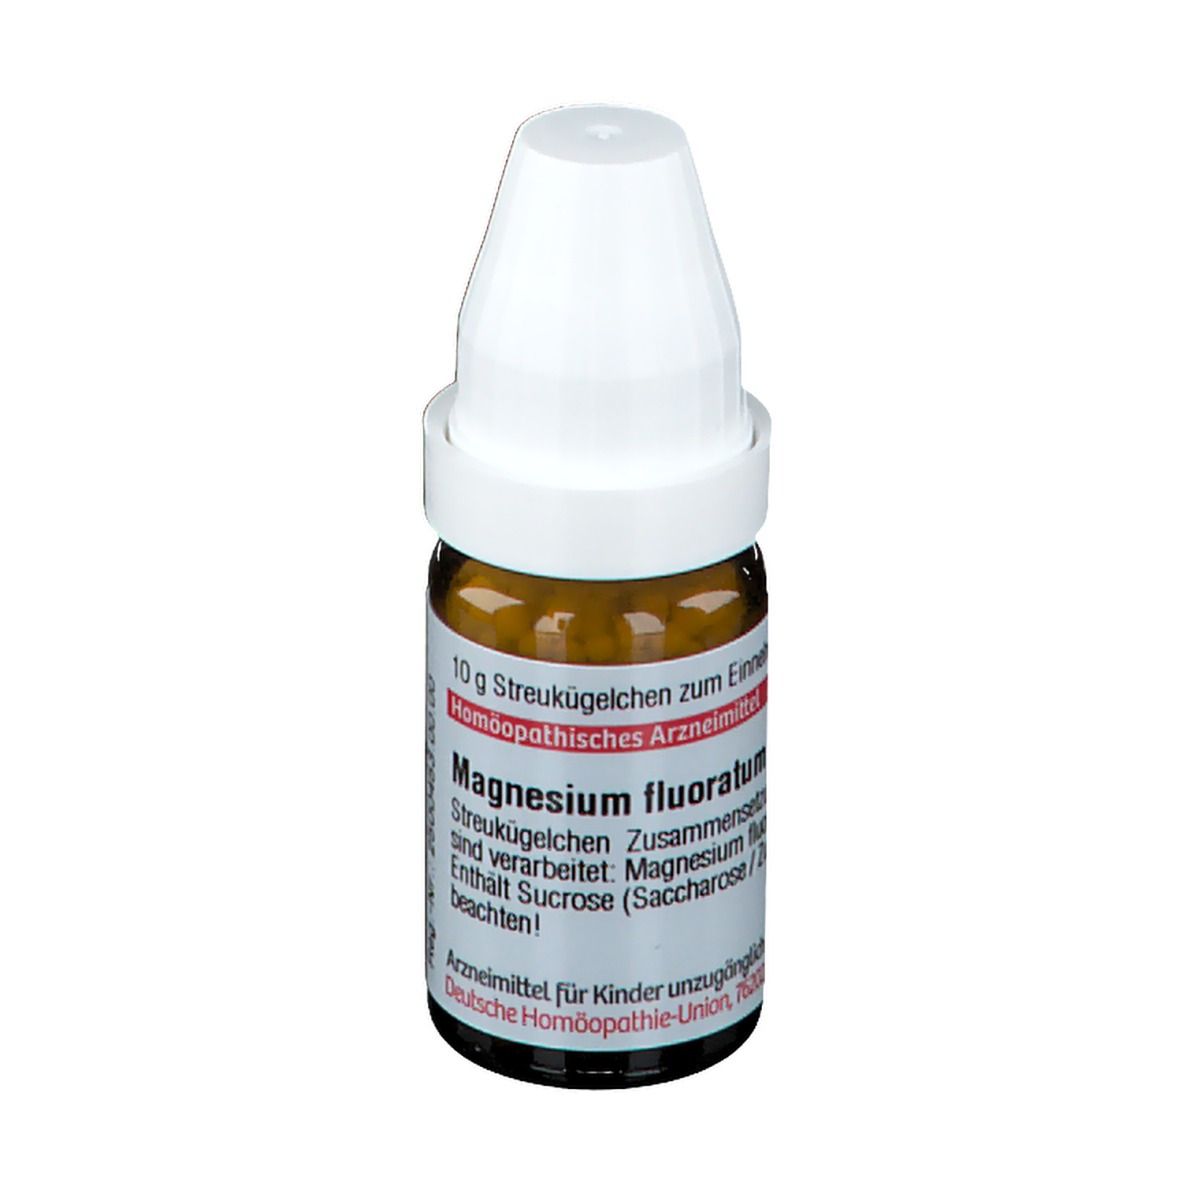 DHU Magnesium Fluoratum D12